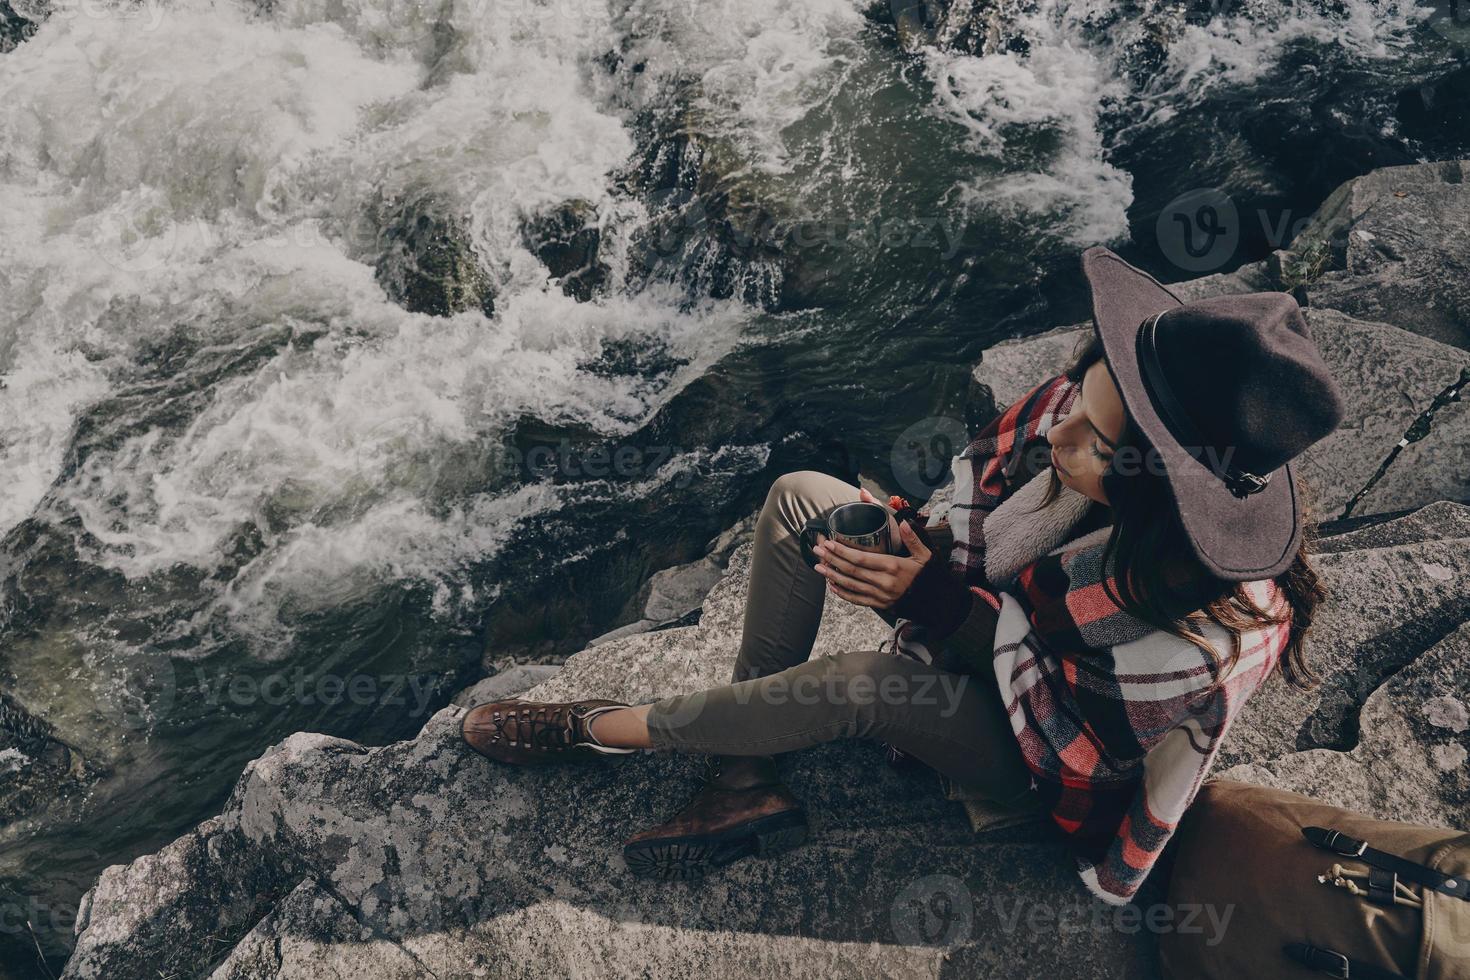 bastante contemplación. vista superior de una hermosa joven cubierta con una manta sosteniendo una taza mientras se sienta cerca del río en las montañas foto